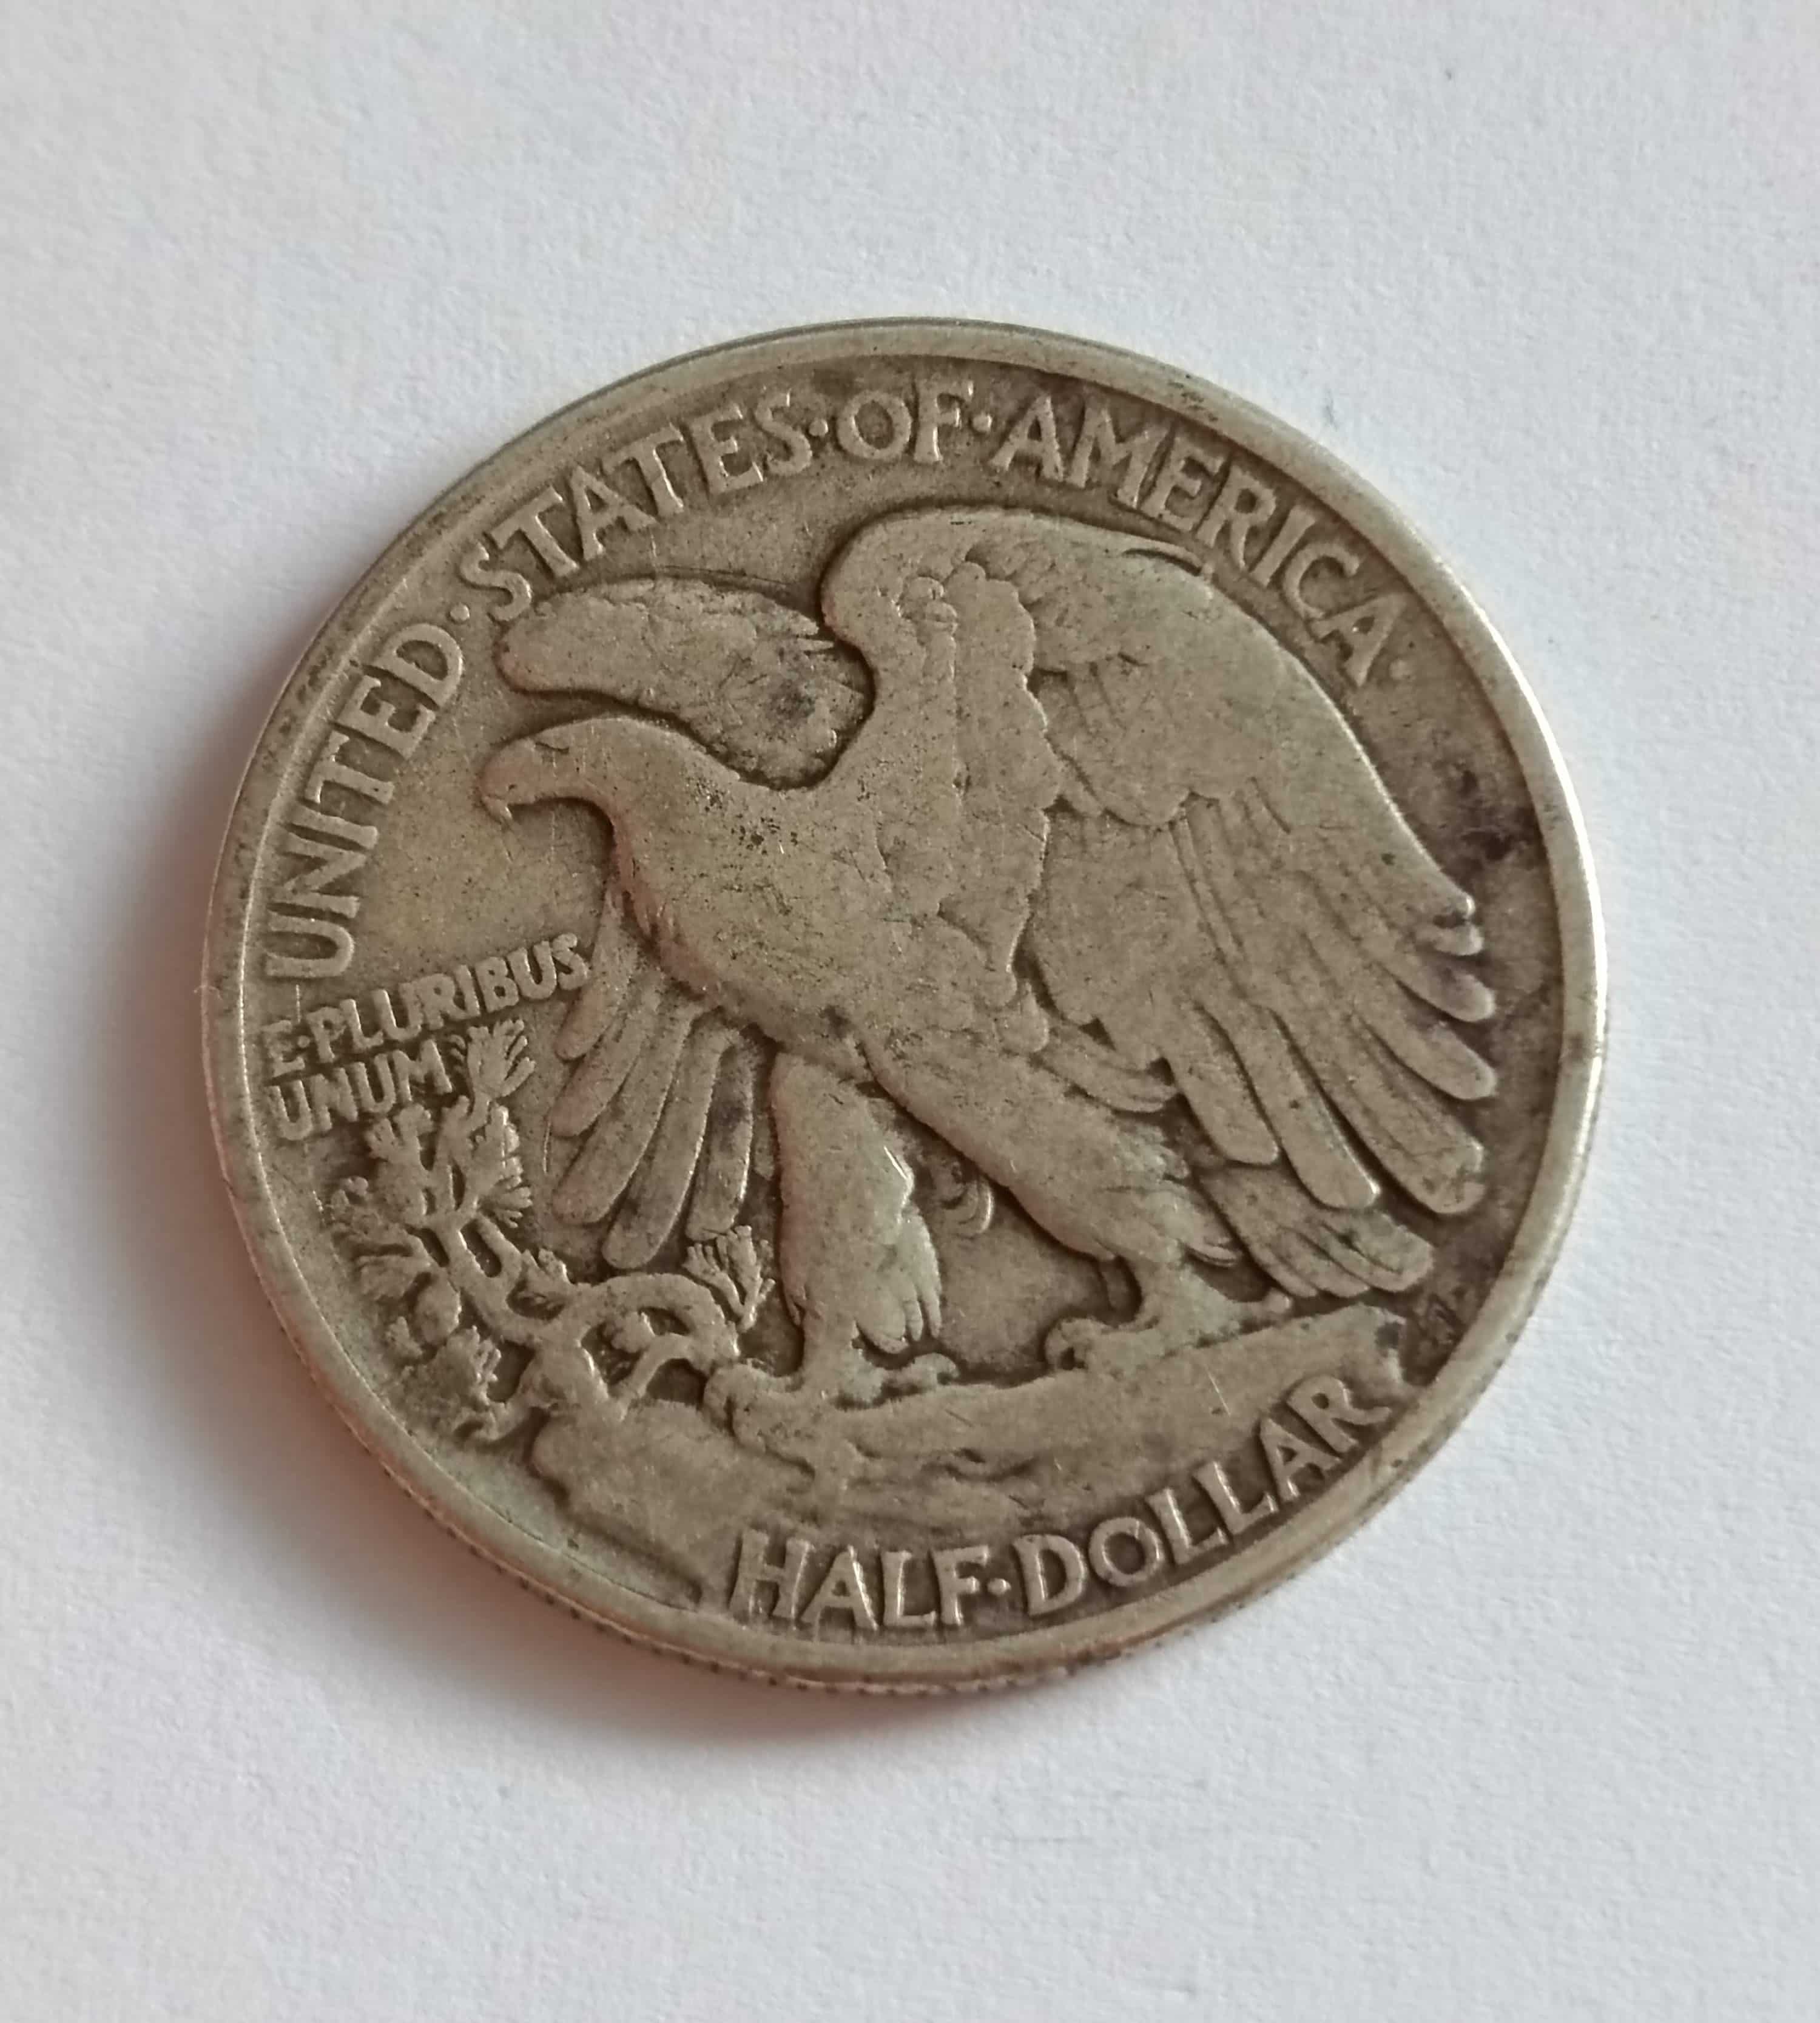 1/2 dollar 1945